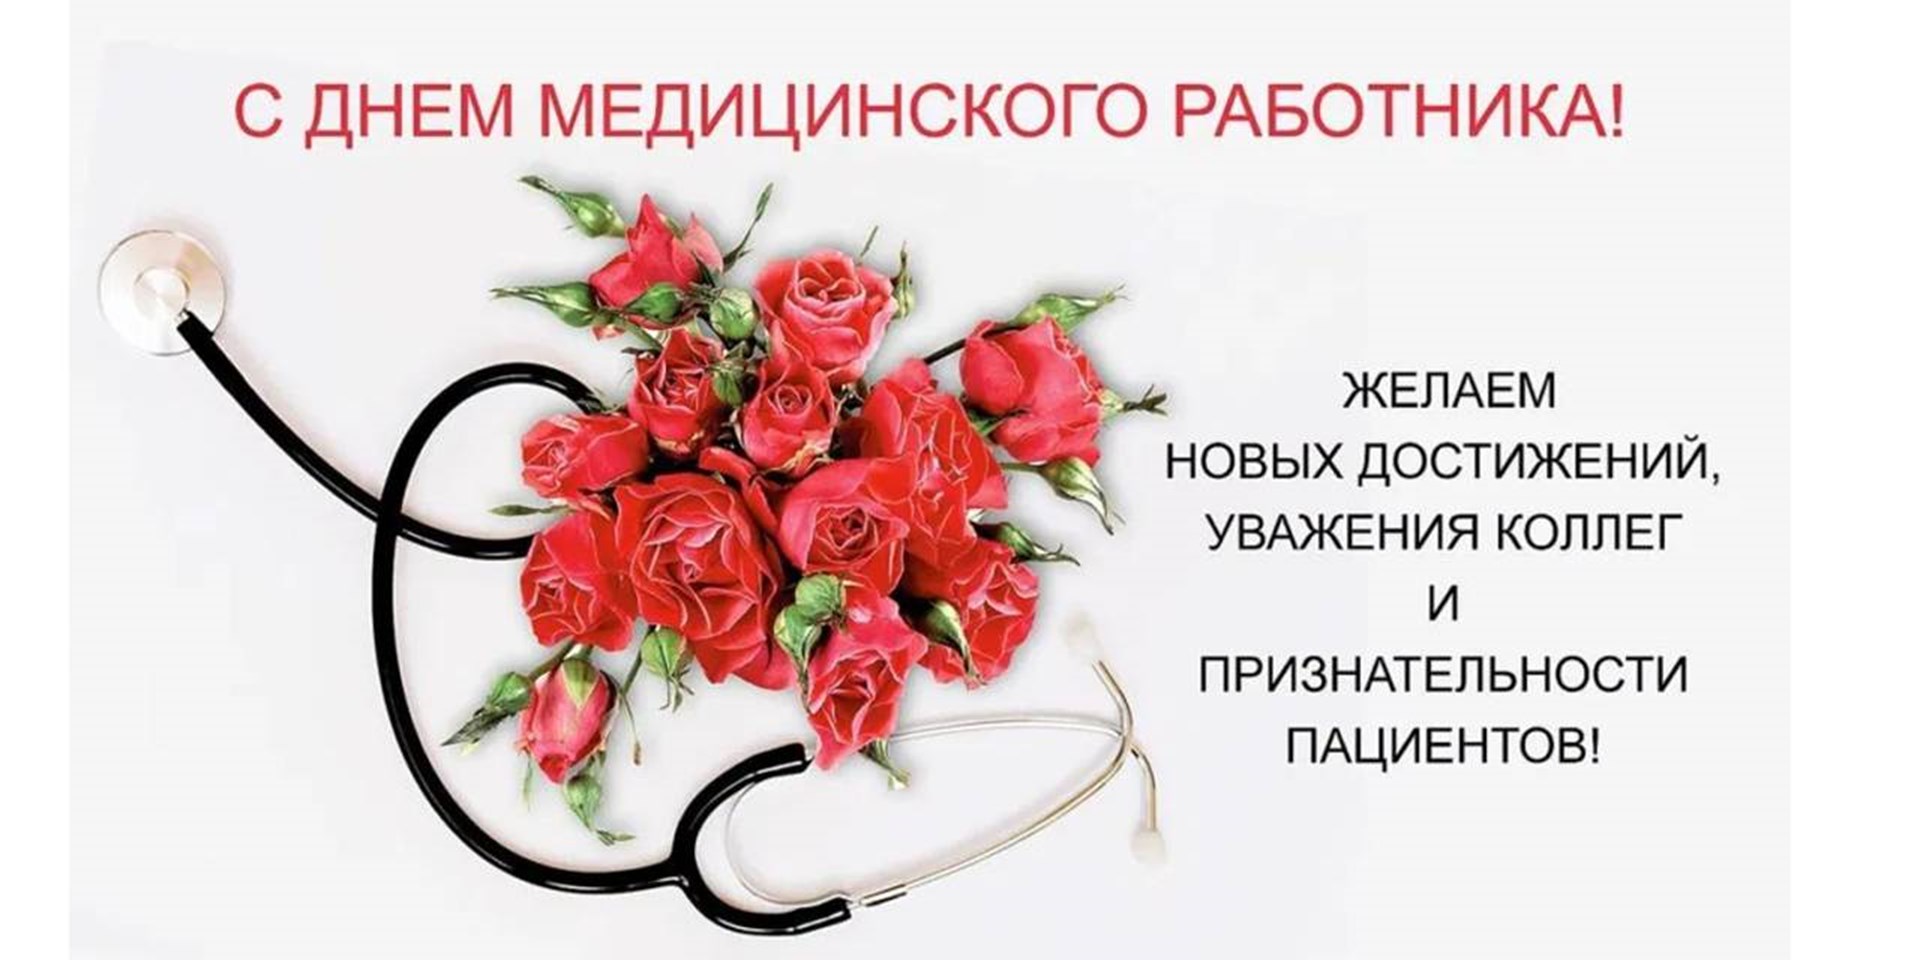 20.06.2021 В России отмечается День медицинского работника